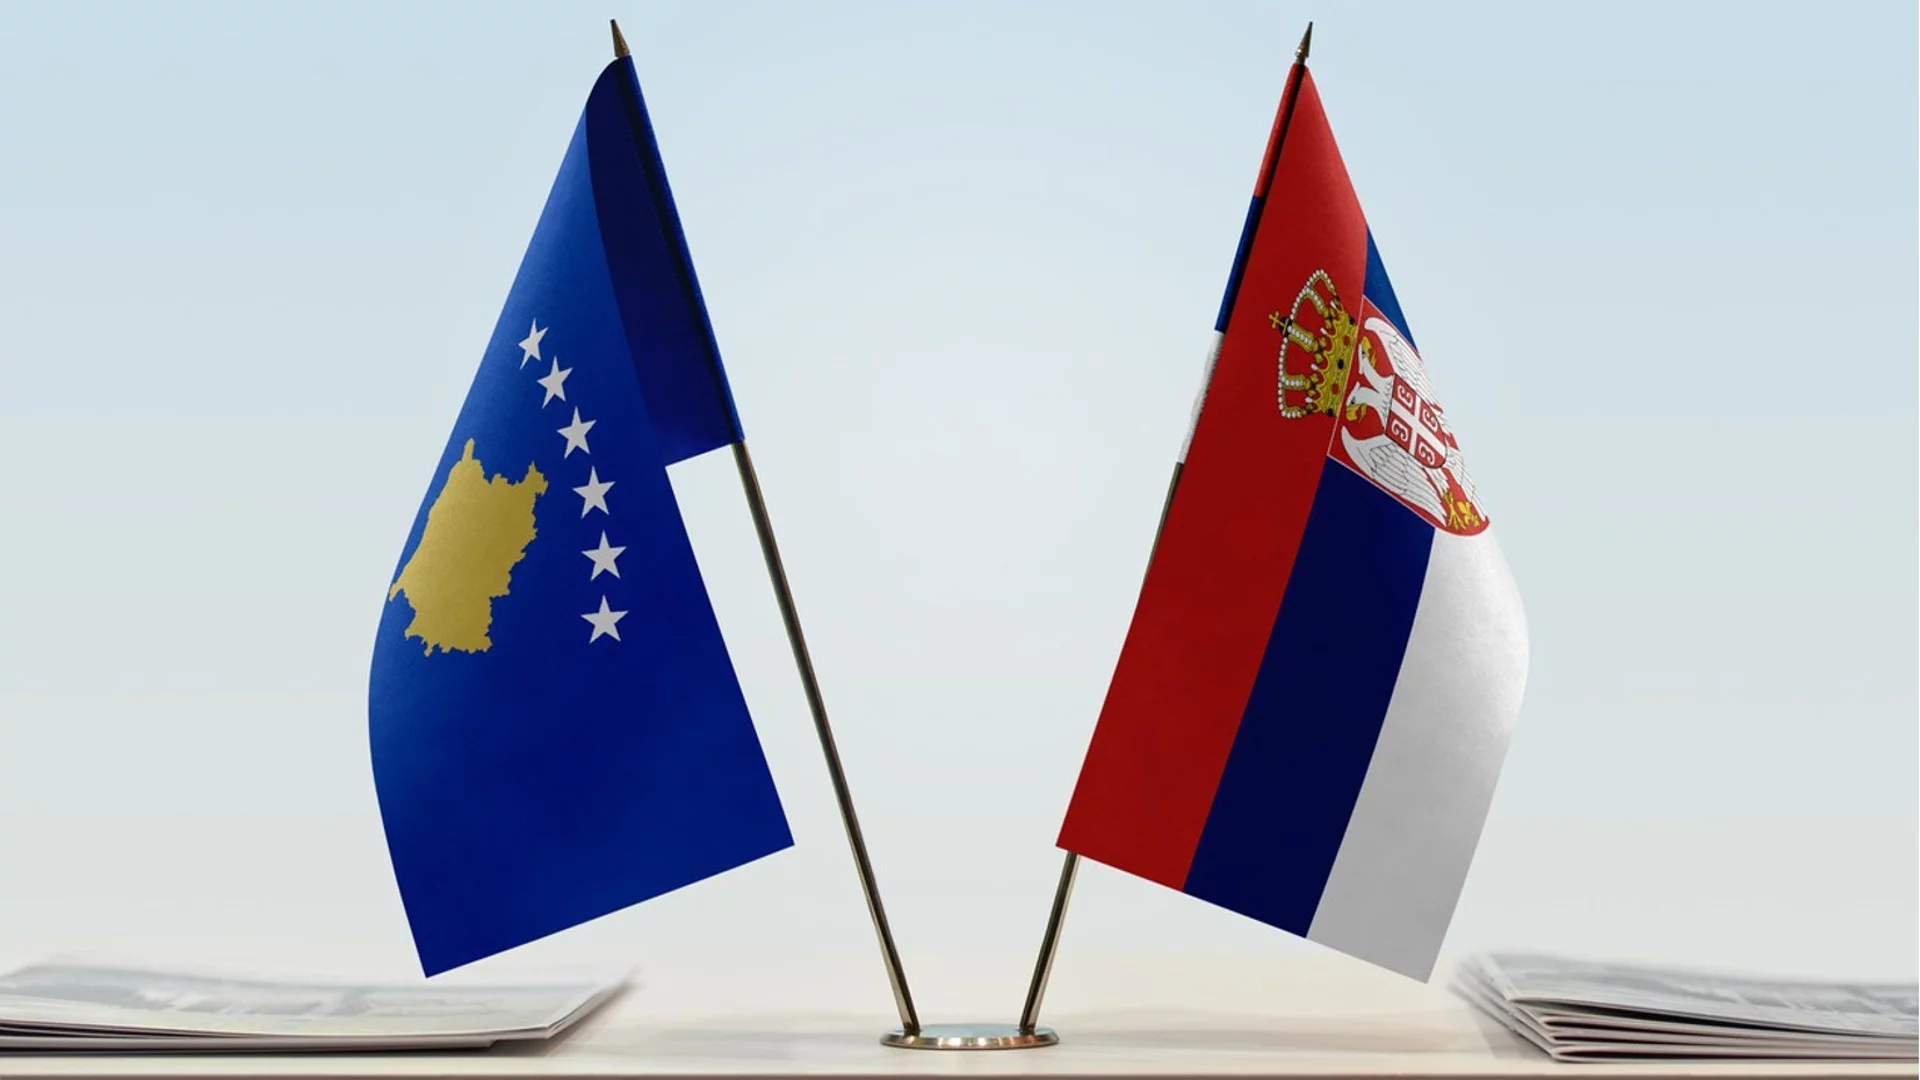 САЩ: Сърбия и Косово трябва да решат проблемите си под егидата на ЕС  